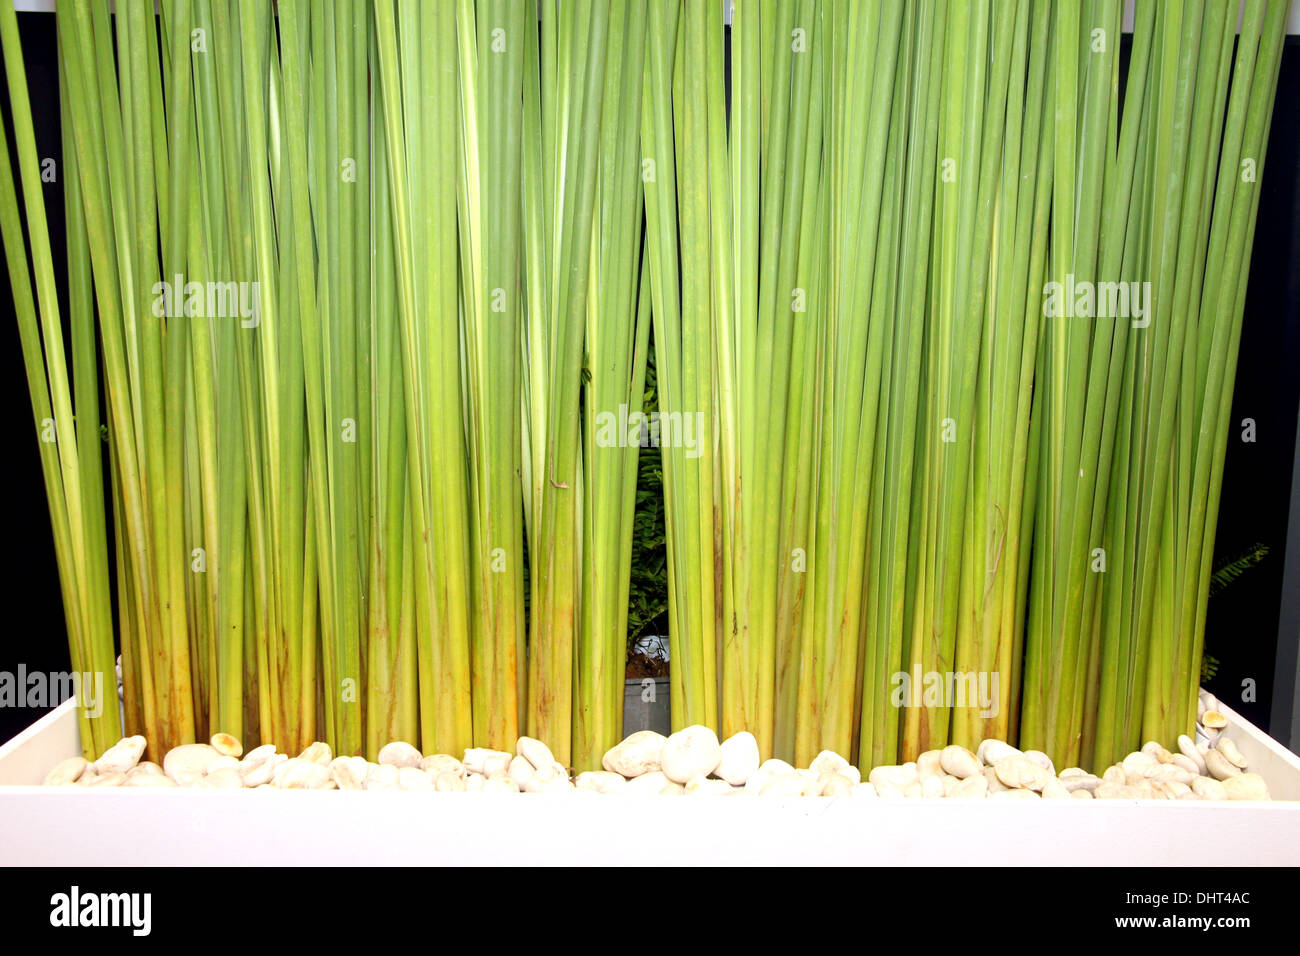 Die Bild-Stiele grüner Pflanzen. Stockfoto